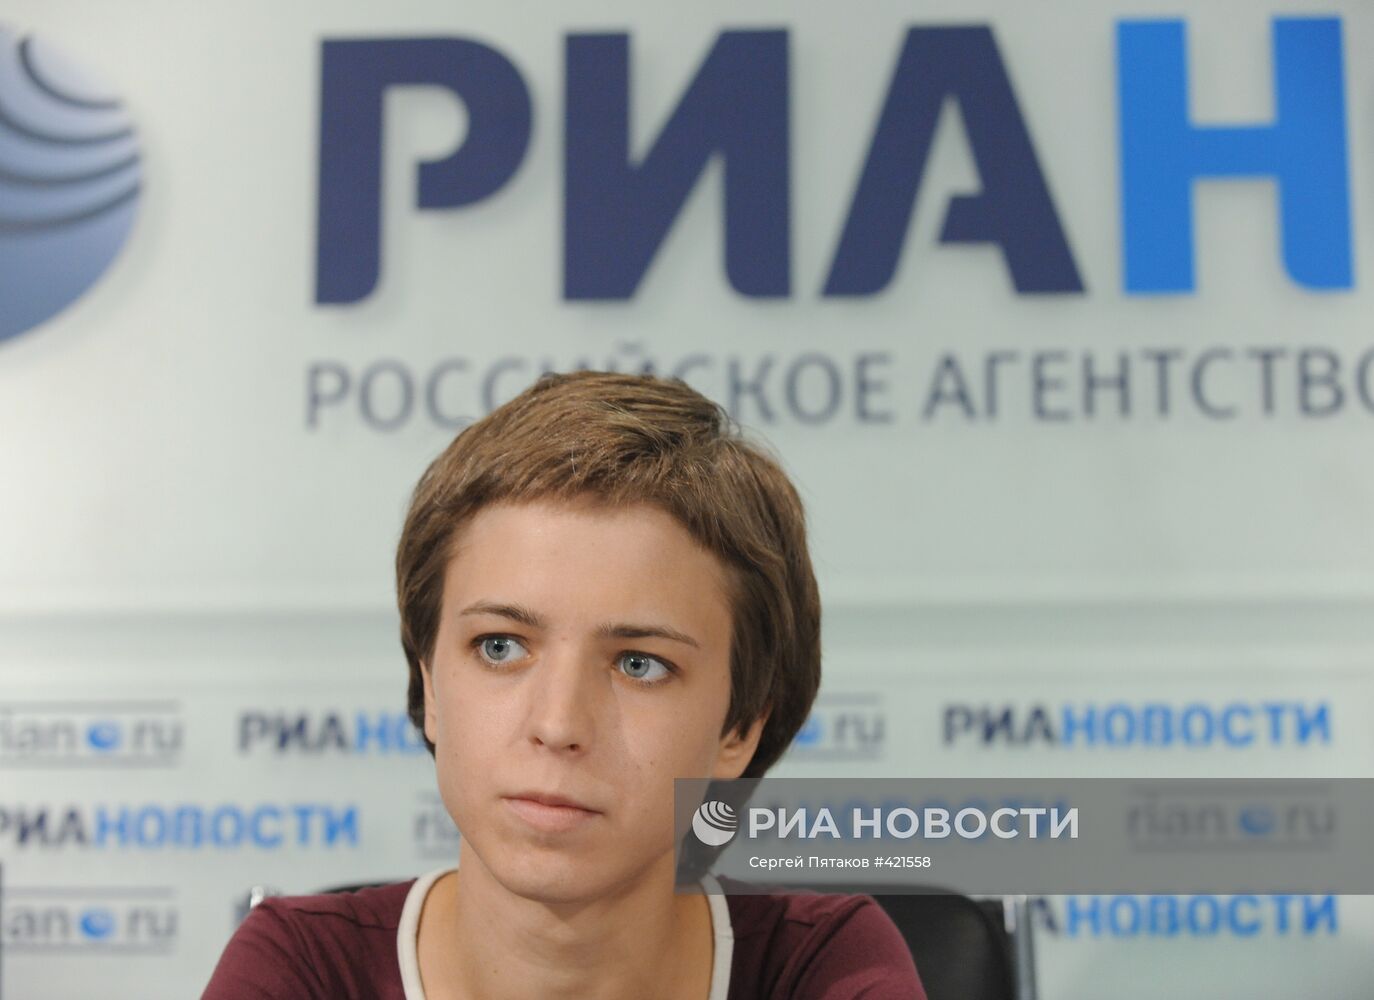 Пресс-конференция дочери Анны Политковской в РИА Новости